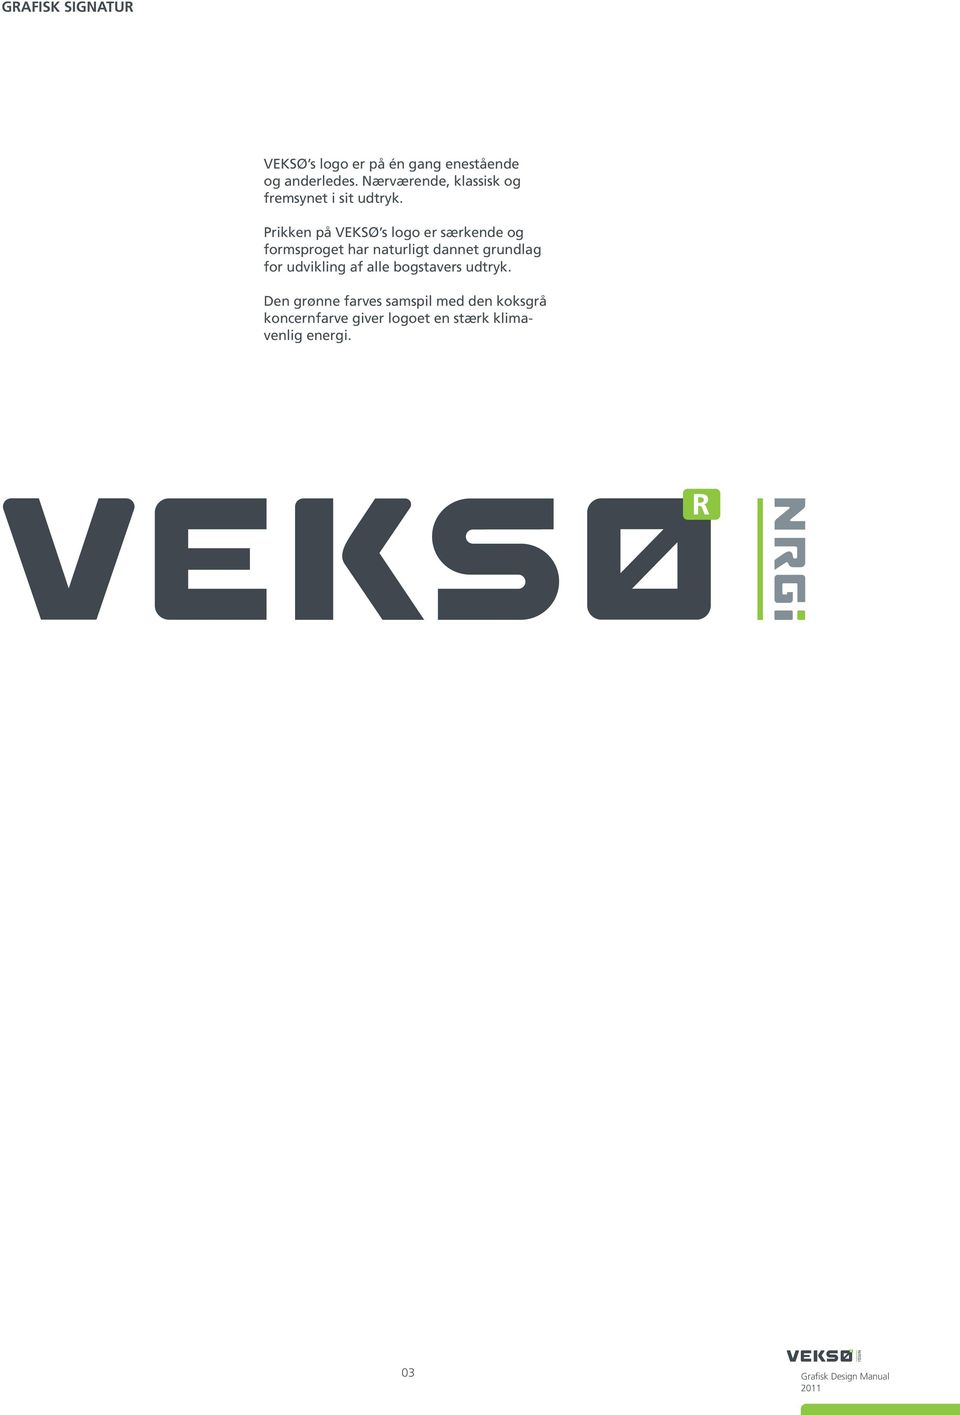 Prikken på VEKSØ s logo er særkende og formsproget har naturligt dannet grundlag for